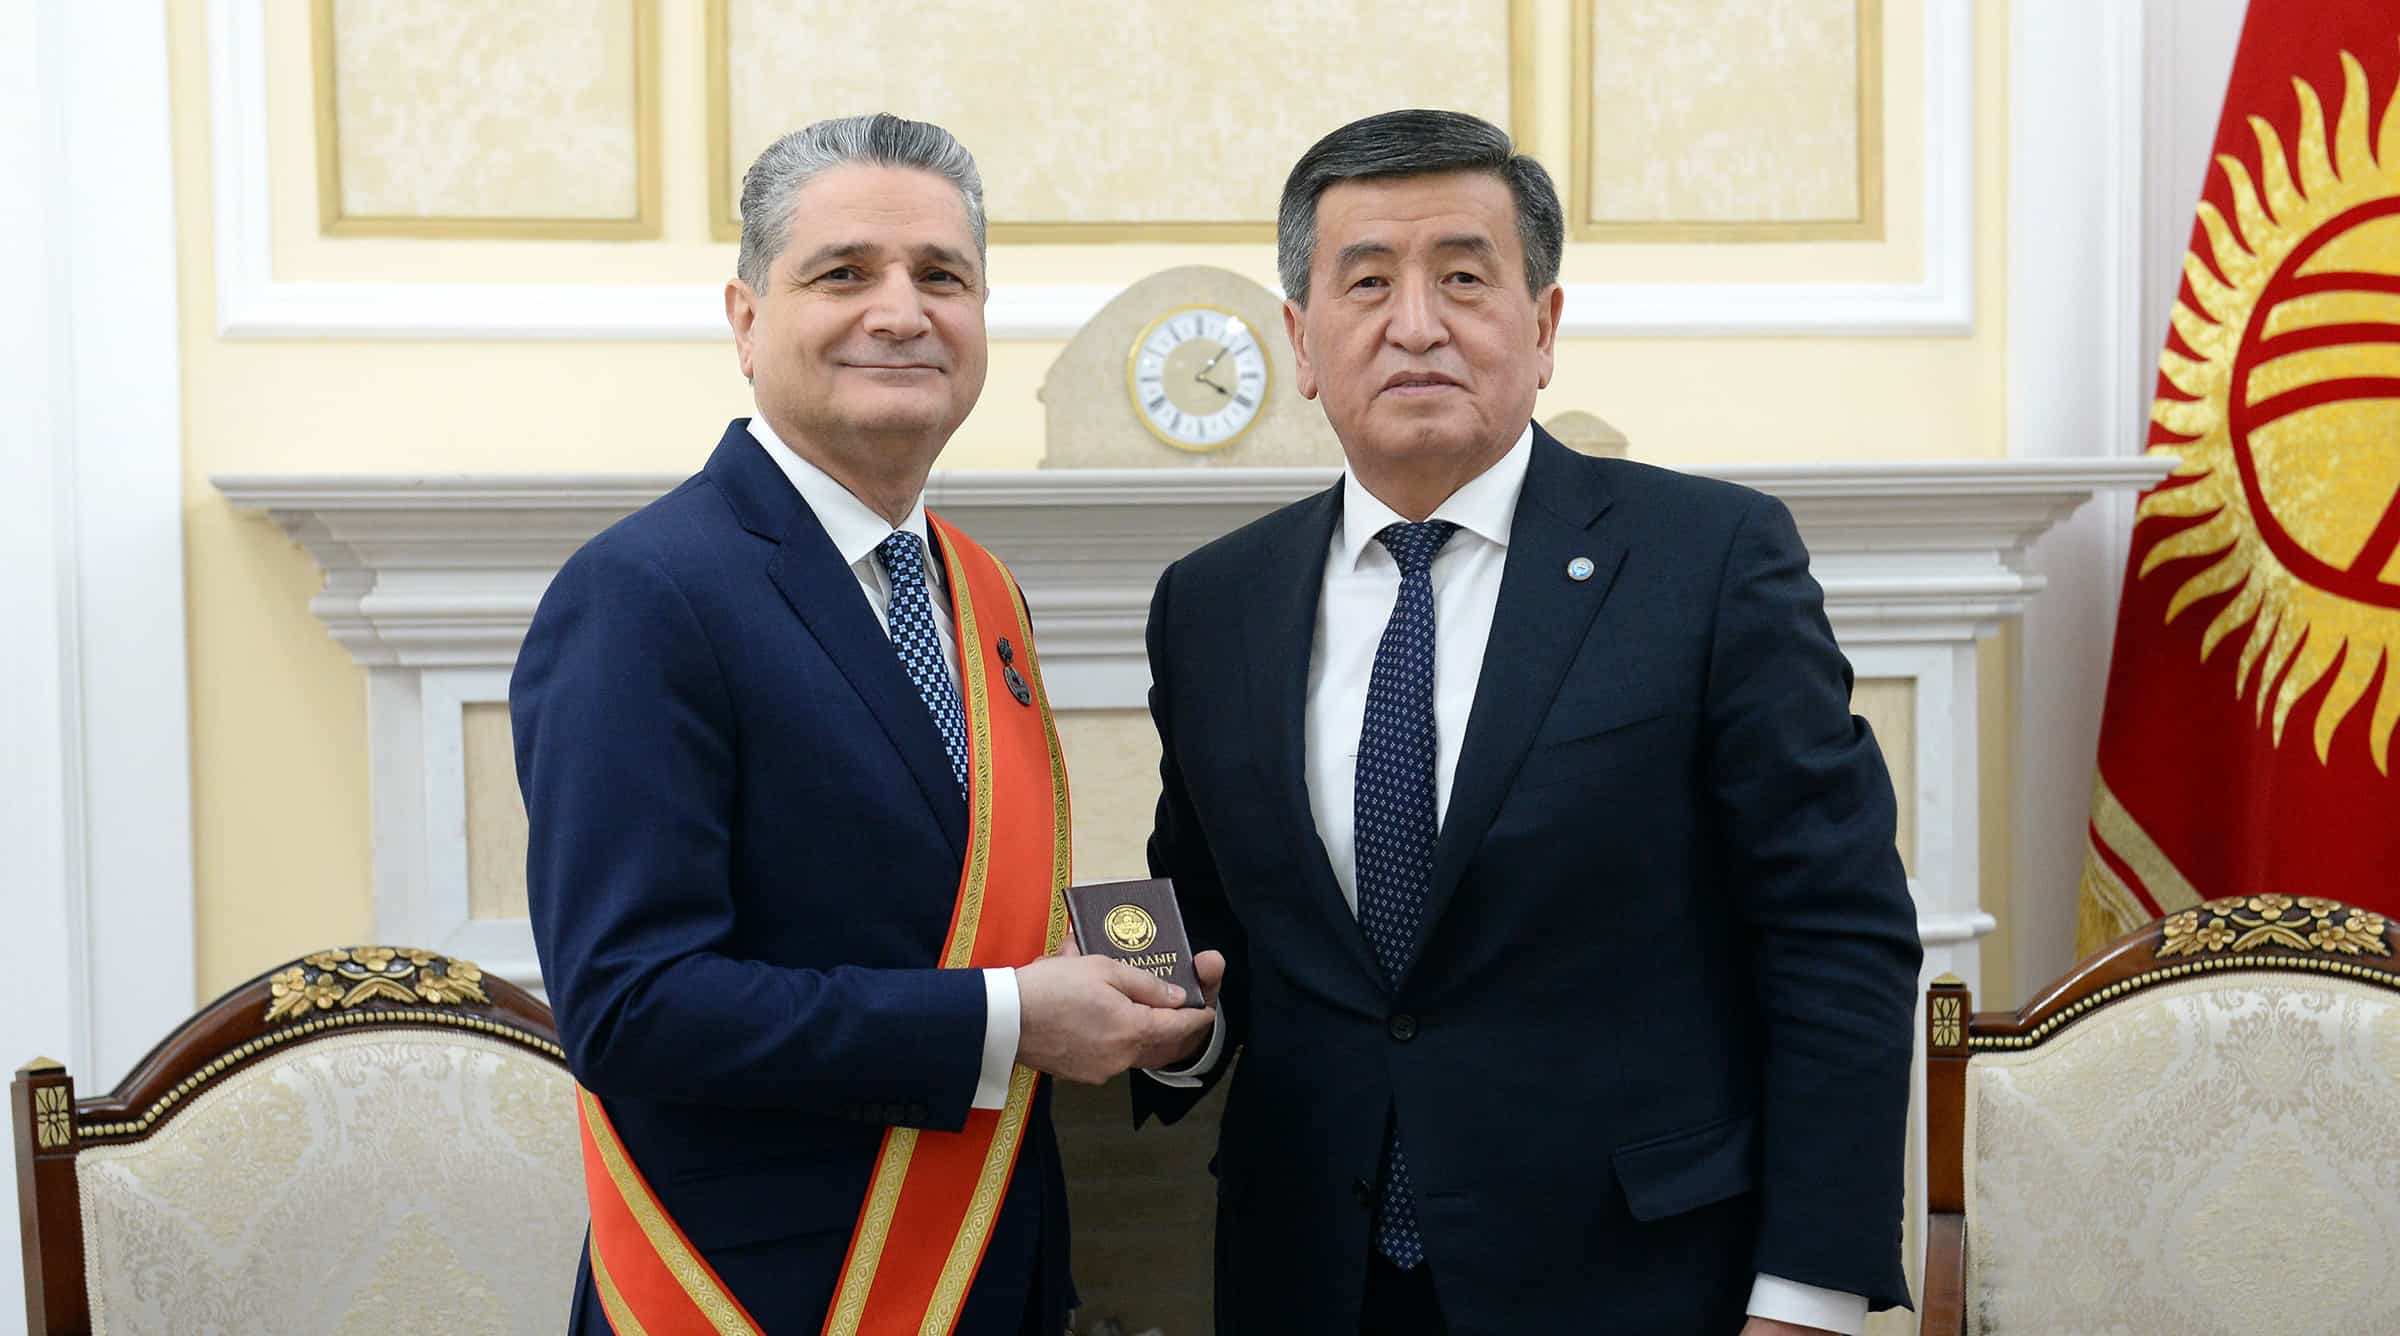 Жээнбеков наградил председателя коллегии ЕЭК Тиграна Саркисяна медалью «Данк»